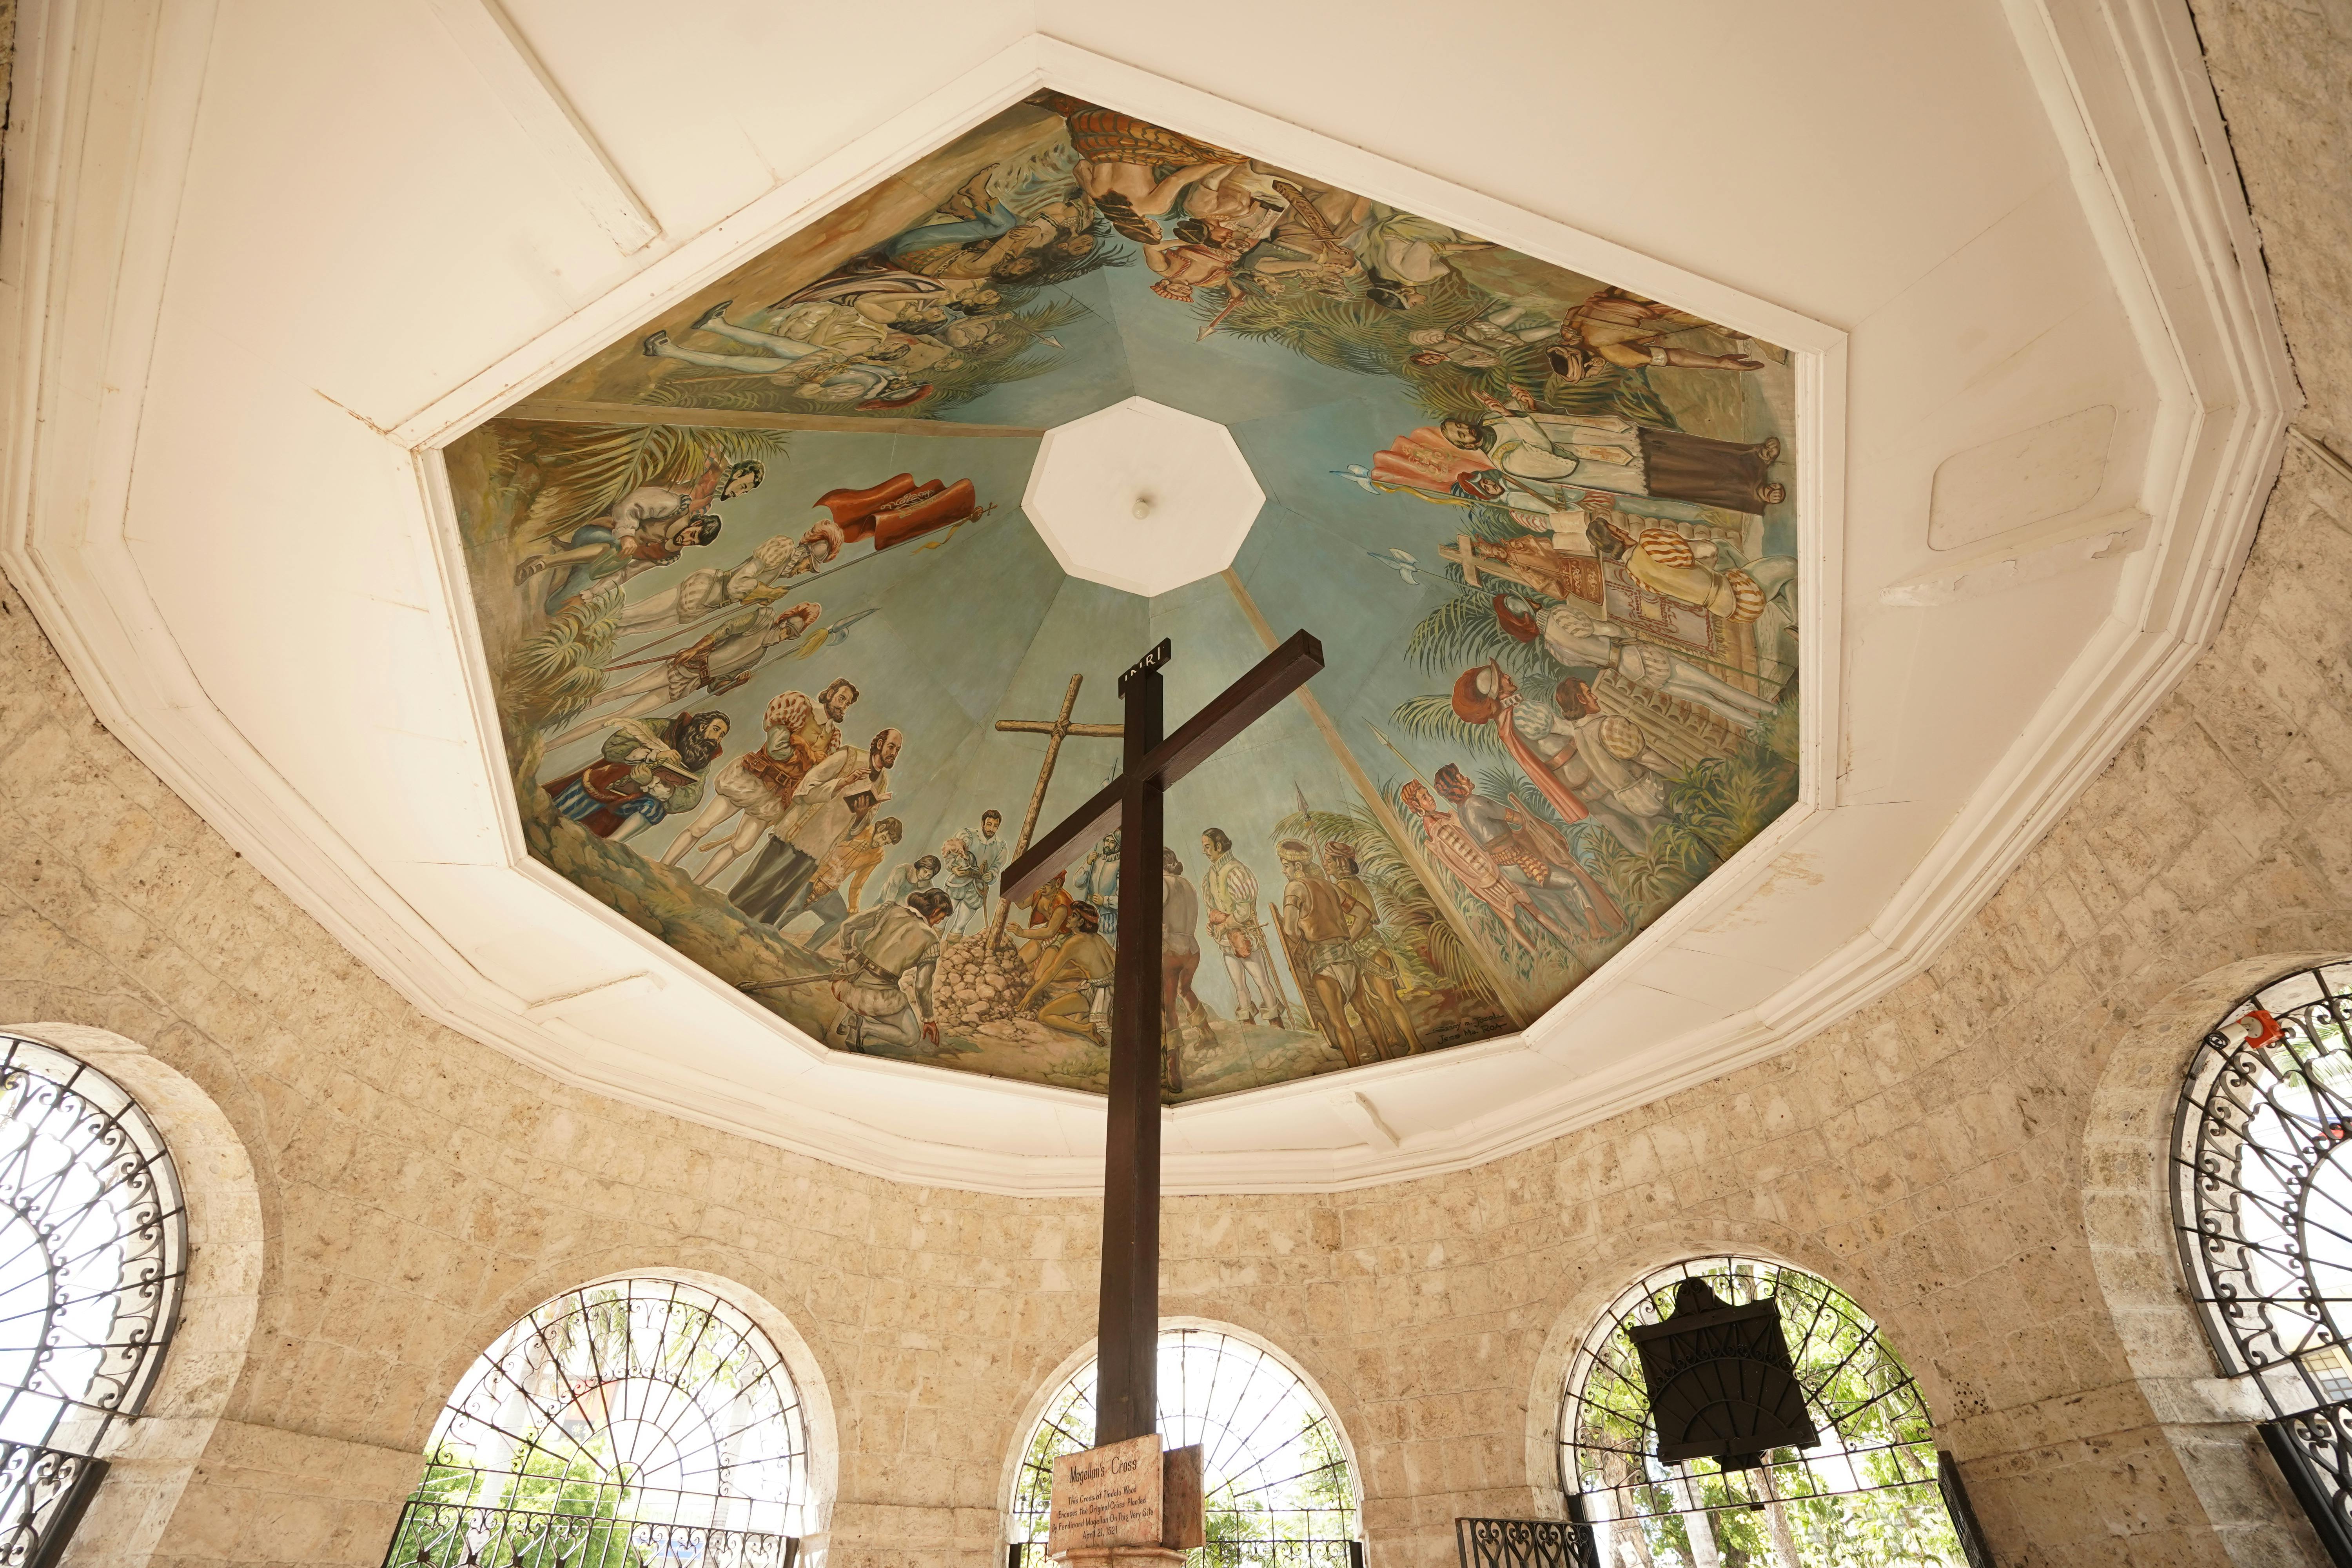 Ceiling view of Magellan's Cross in Cebu